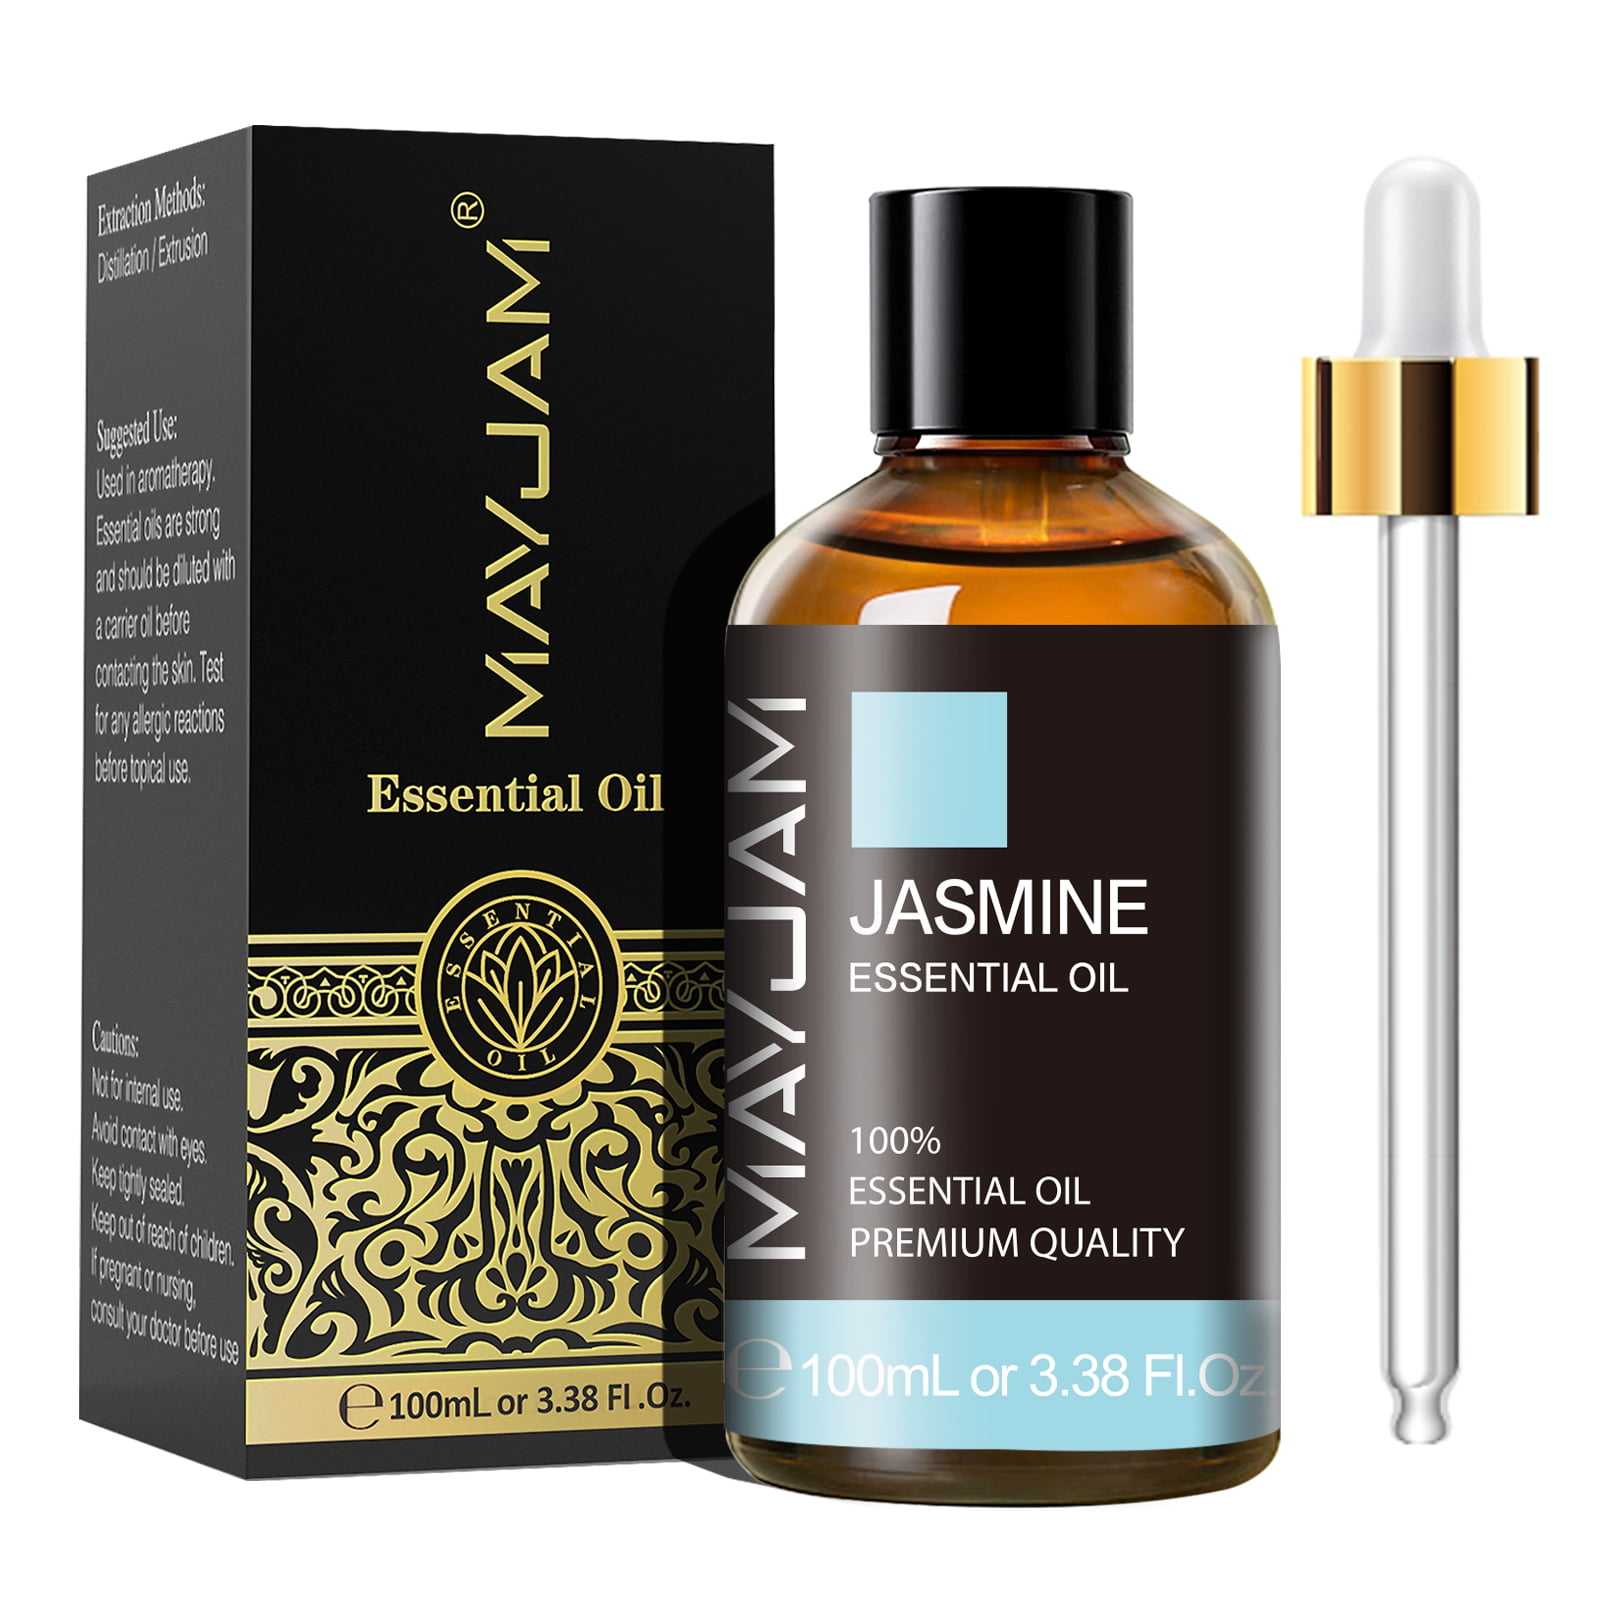 Myrrh Essential Oil 100% Pure Natural Aromatherapy Therapeutic Grade Skin  Soap